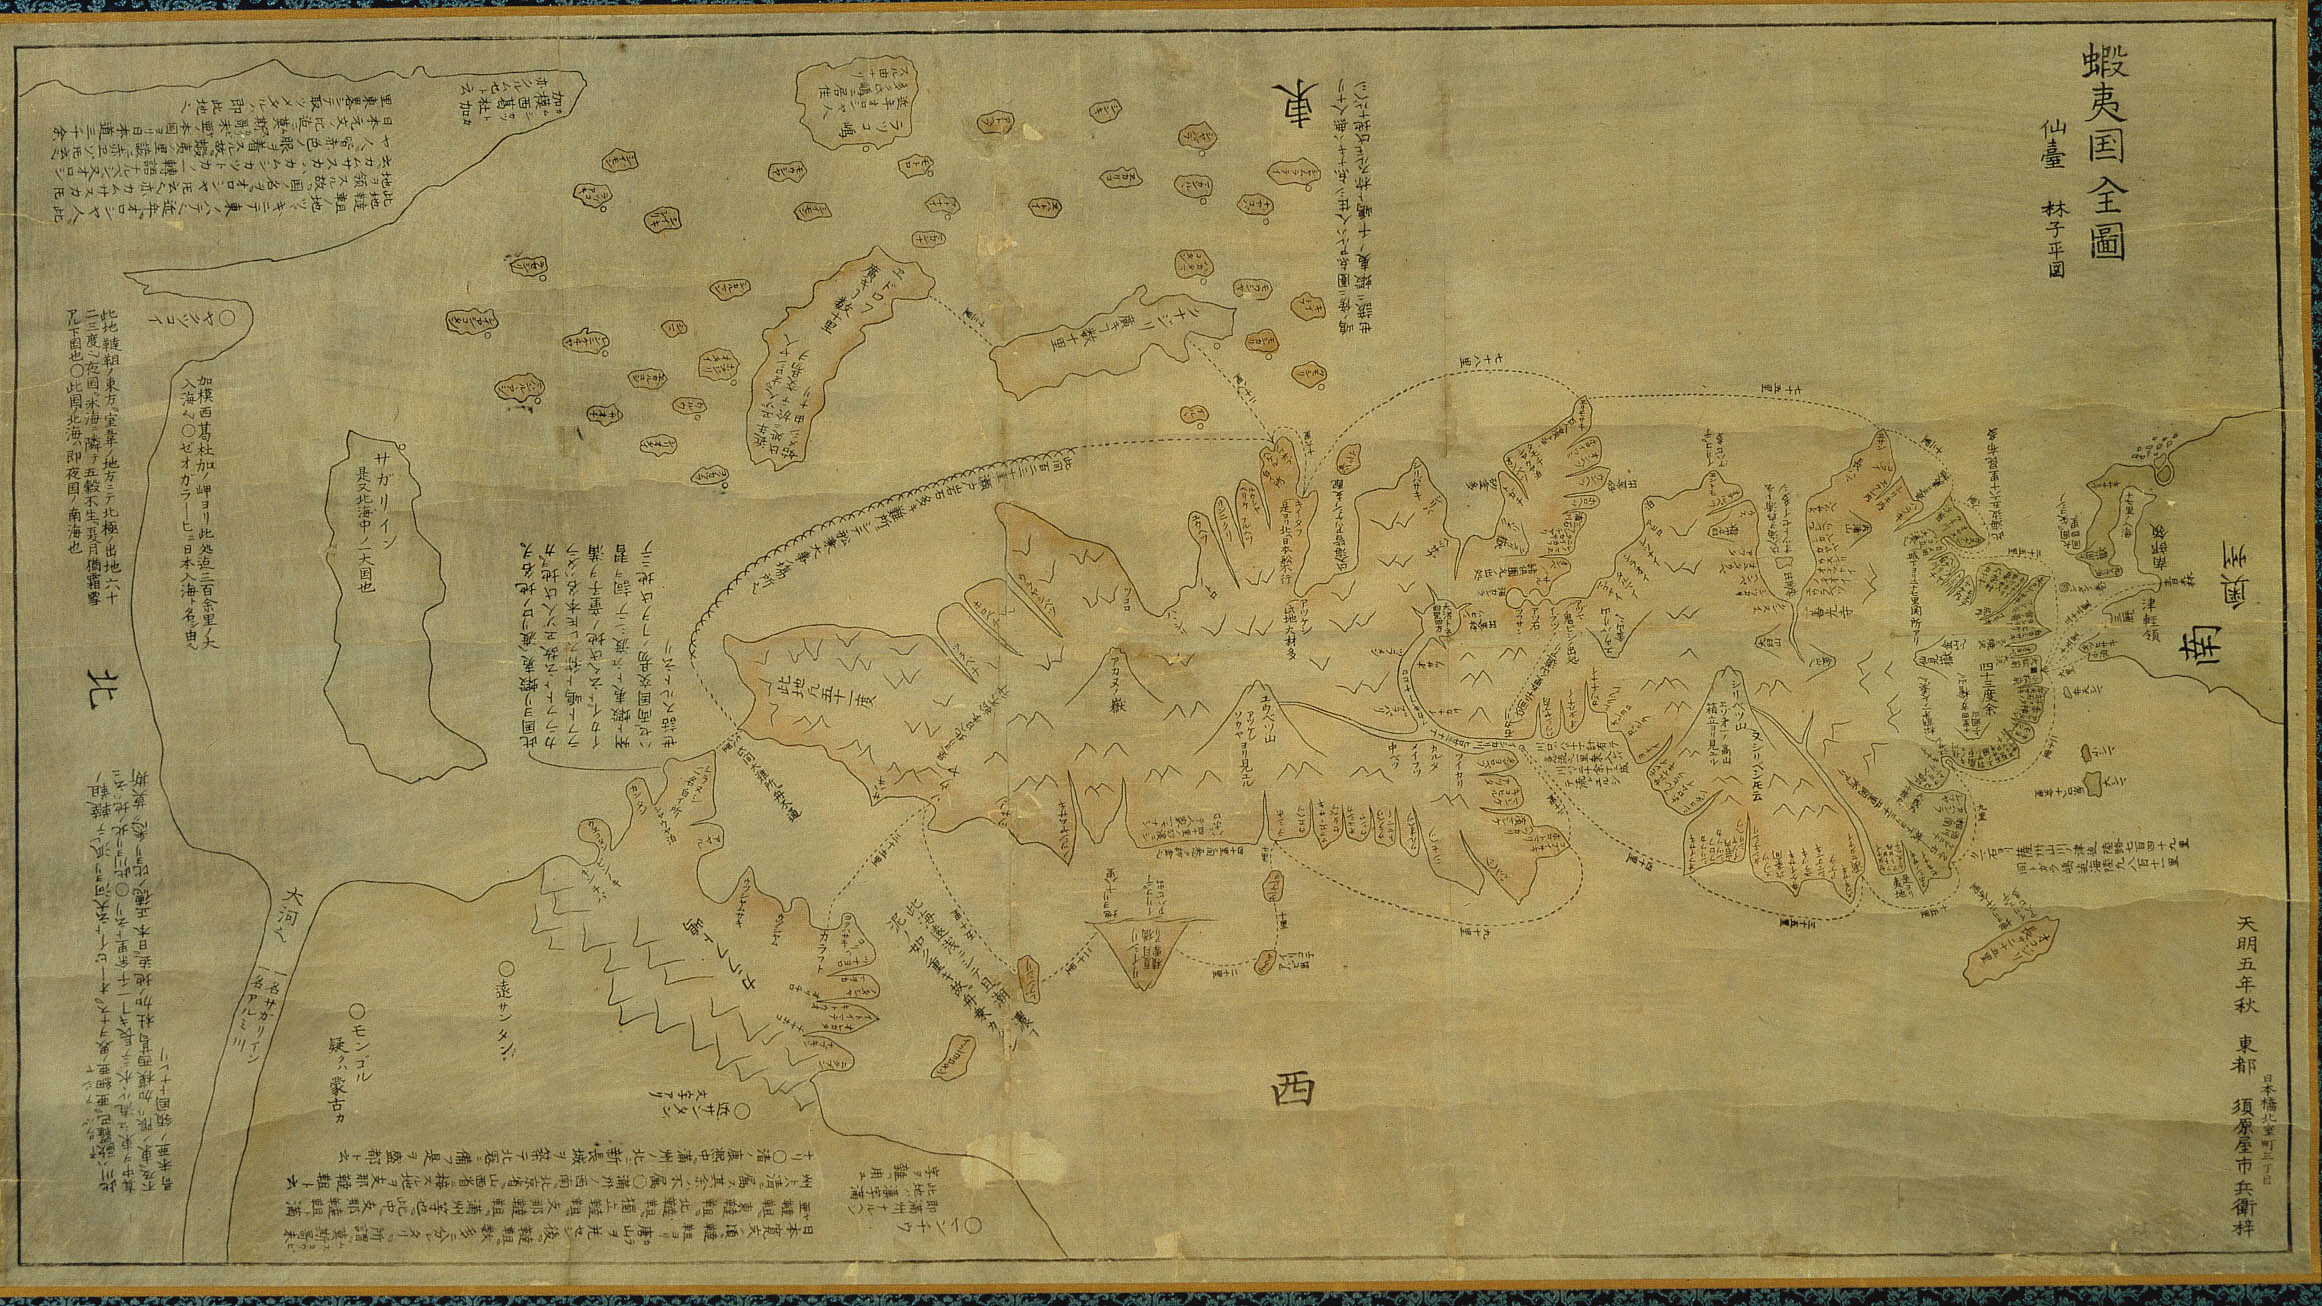 北方古地図展 第一期 北海道図の変遷 Hokkaido University Library